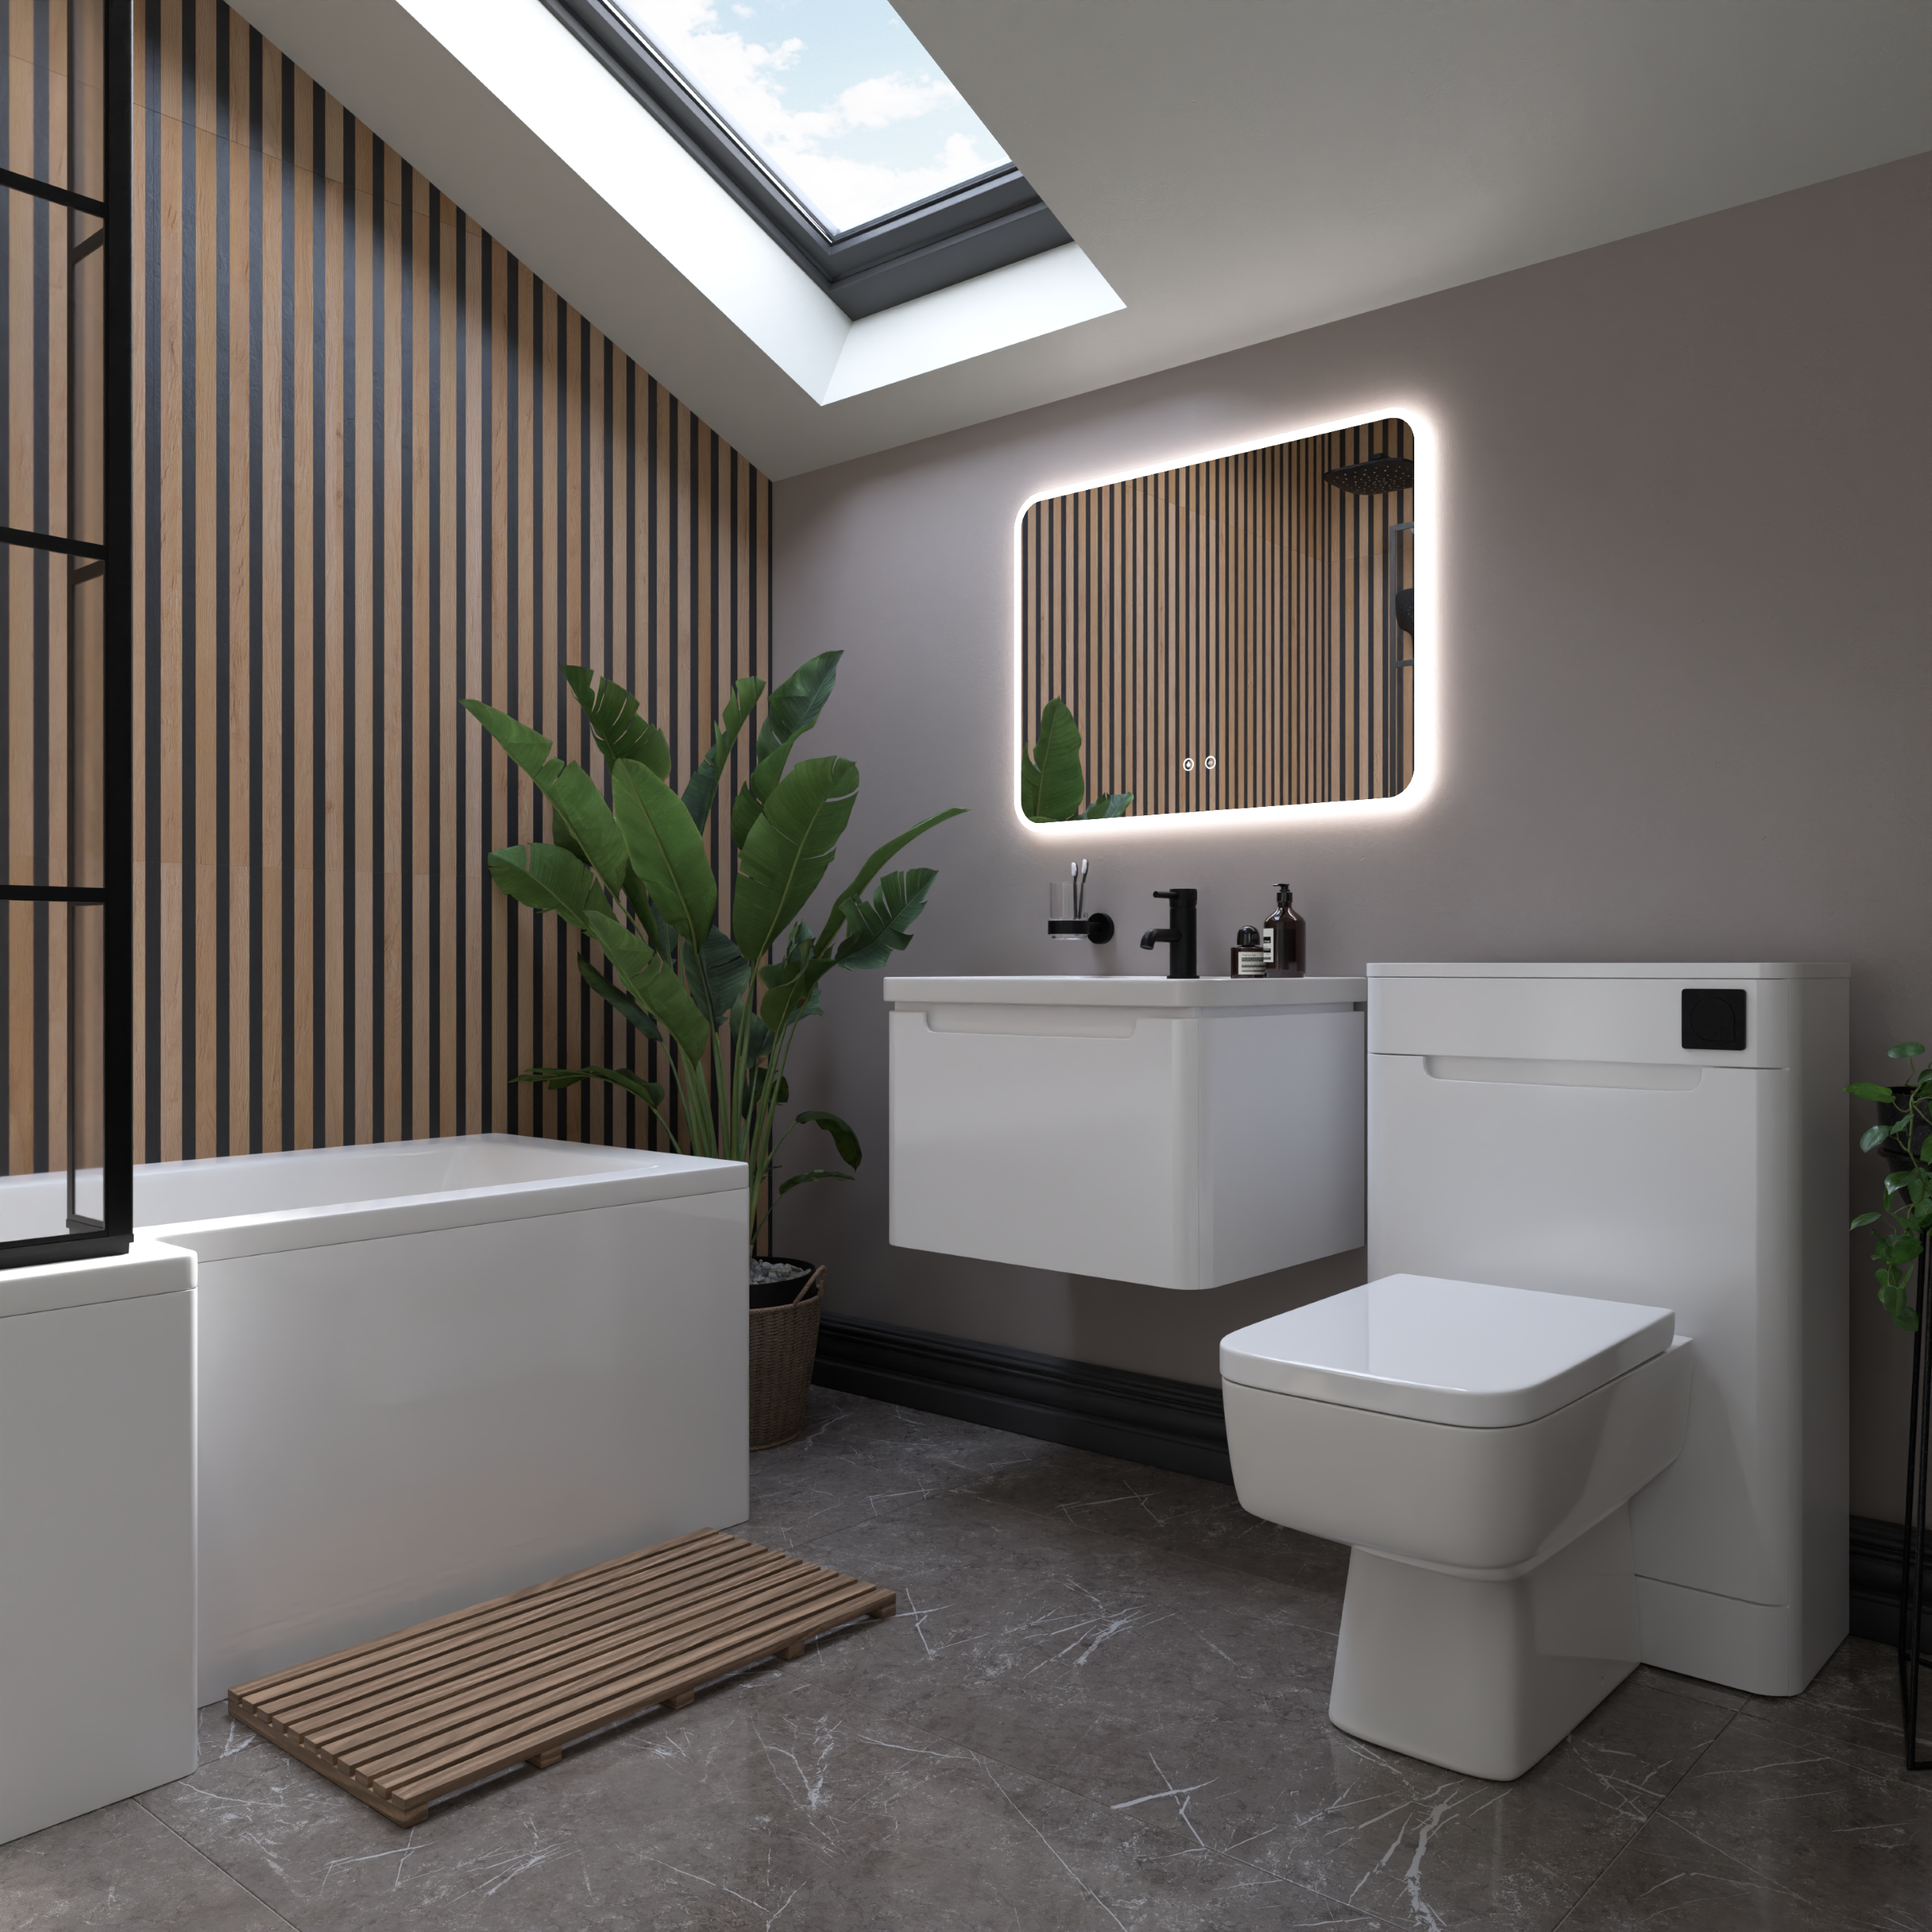 Modern bathroom with bath, toilet and sink unit